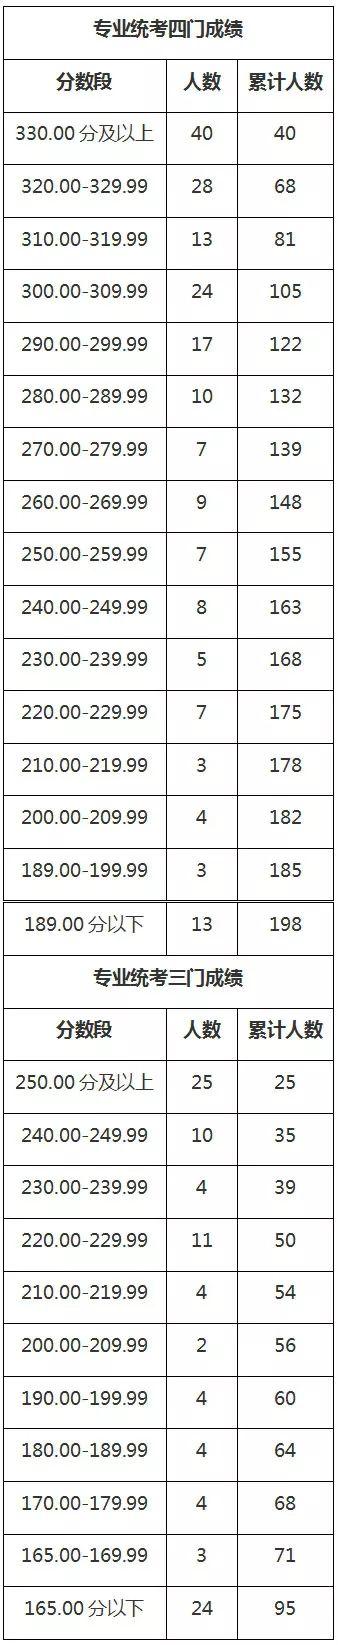 2018年上海艺术类专业统考合格线公布